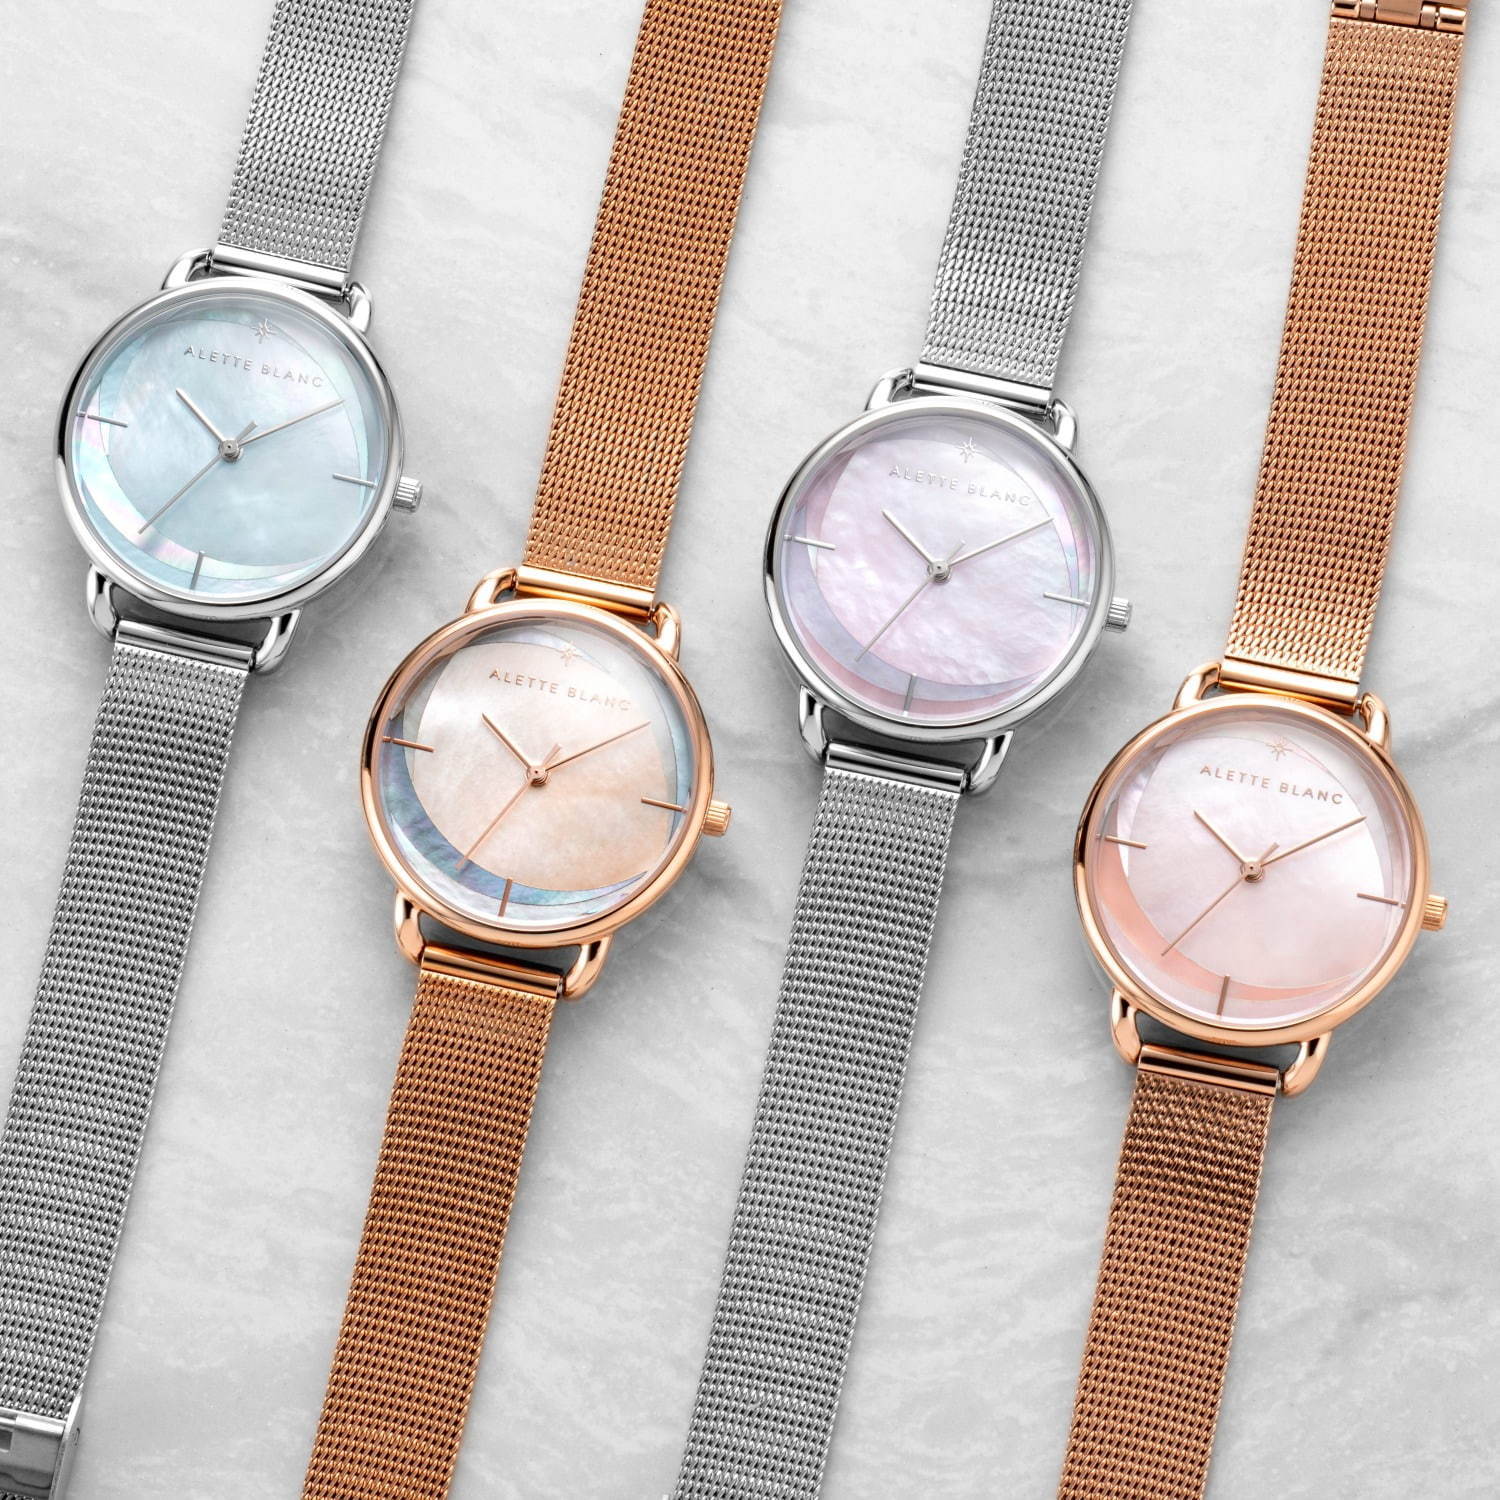 アレットブランの新作腕時計「ブリーズ コレクション」3色パールで“そよかぜ”を表現 コピー